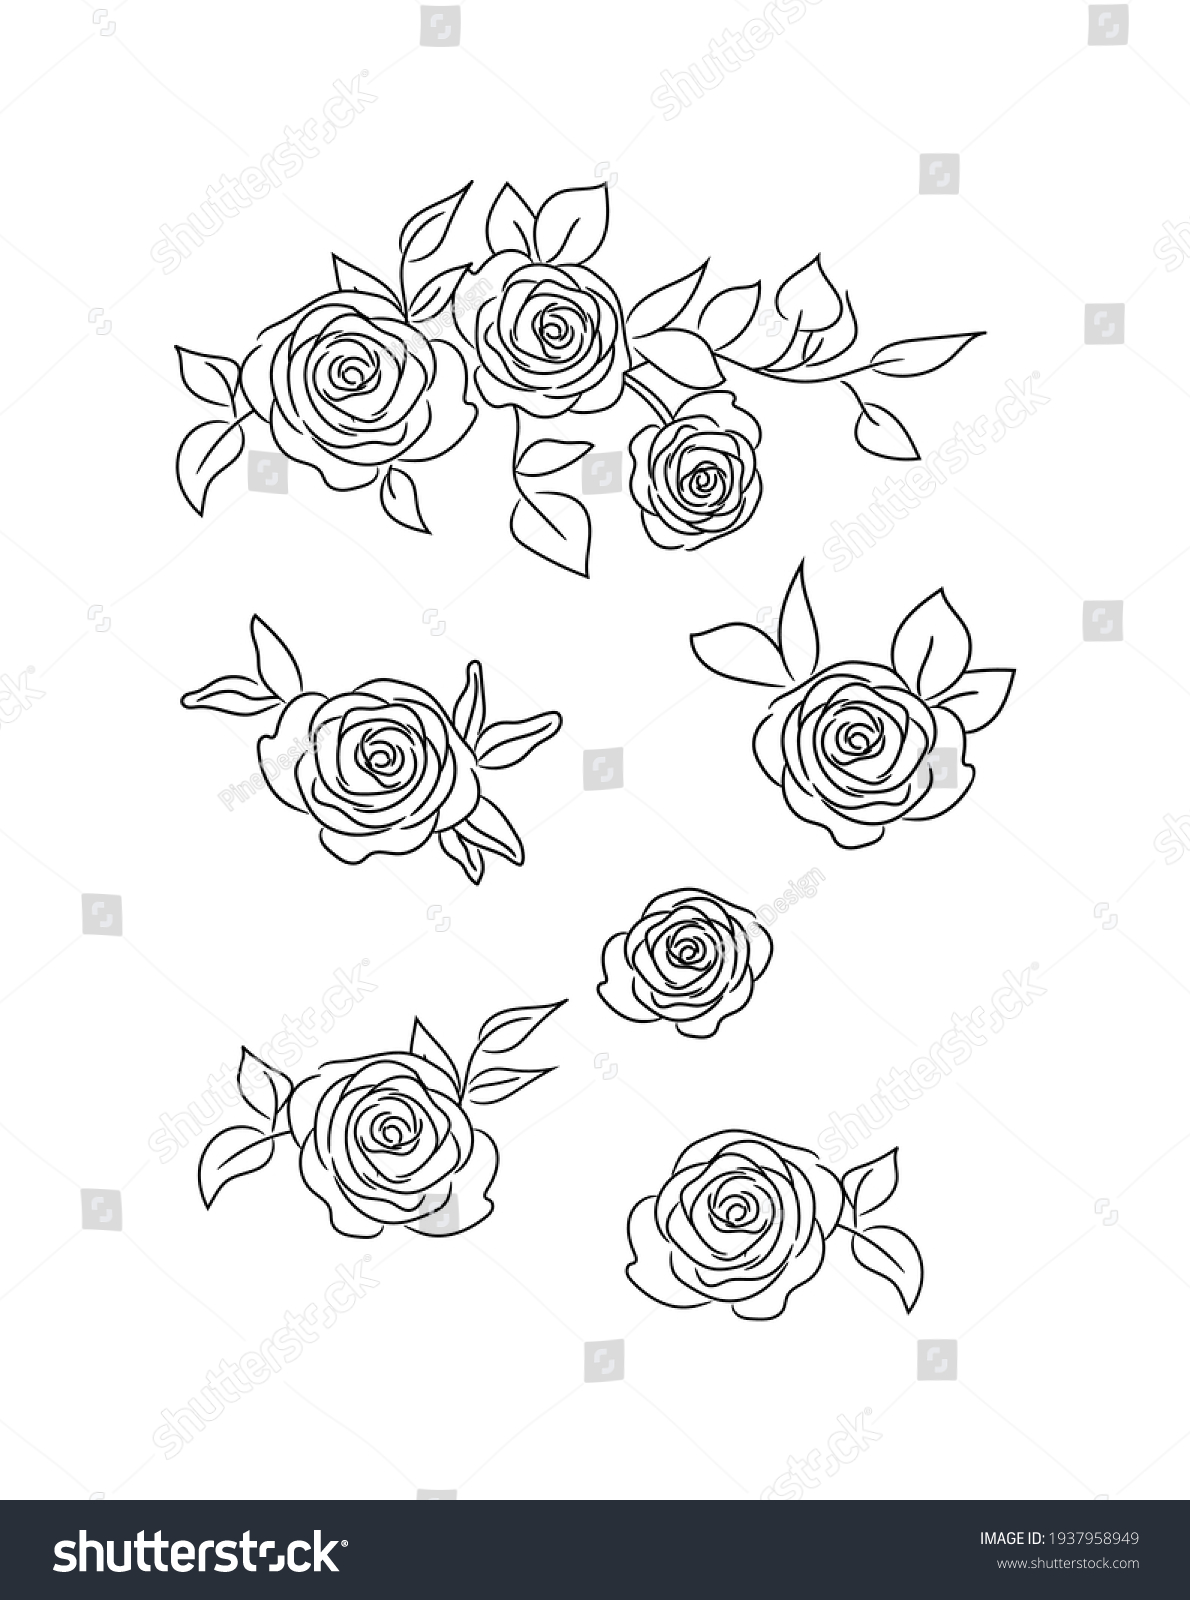 SVG of Roses Vector Illustration Set. Rose flower arrangements for wedding invitations, cards etc svg